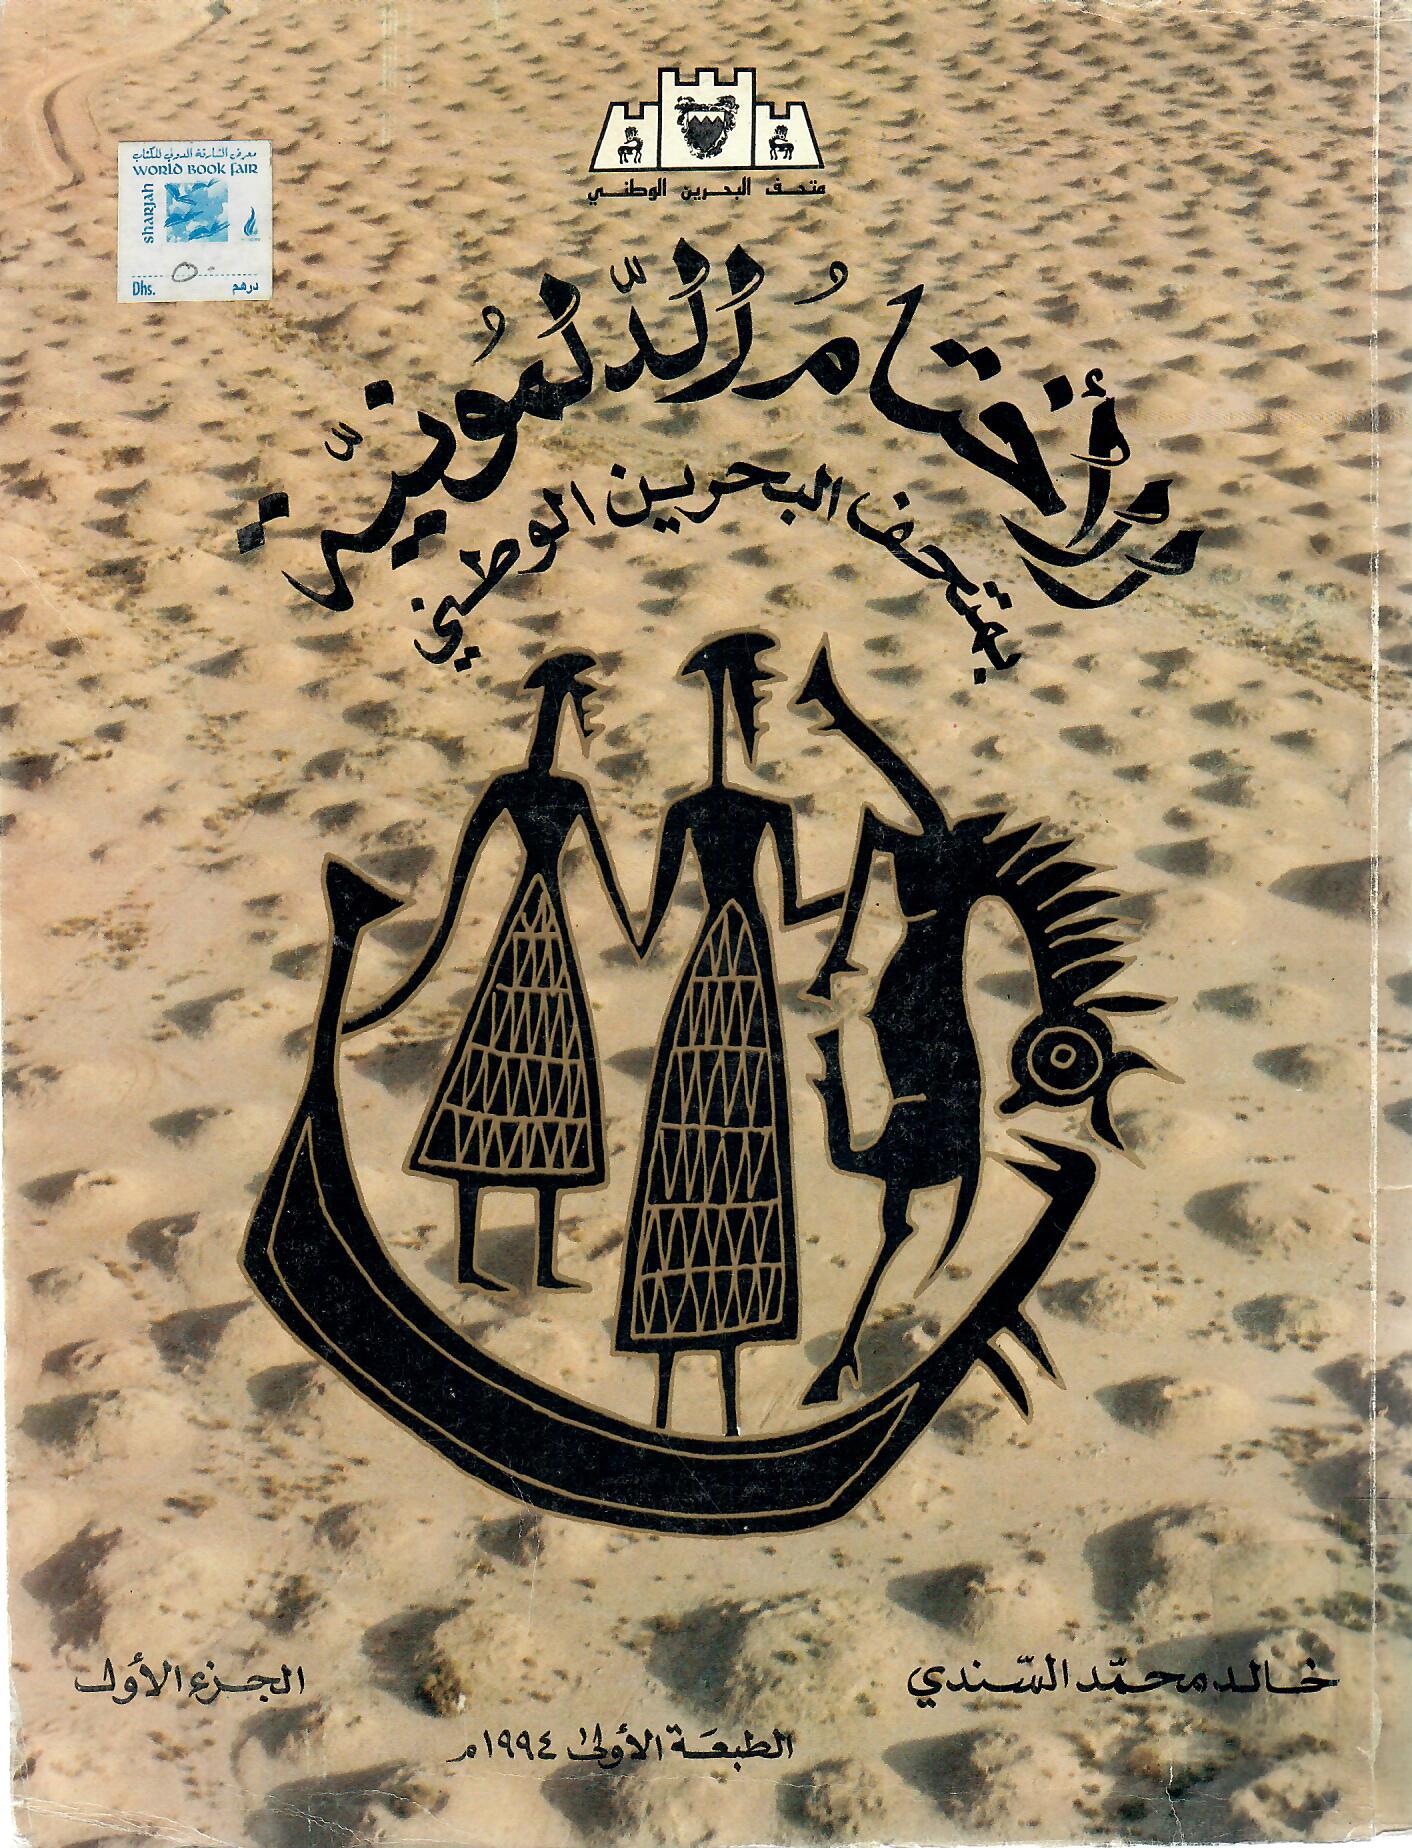 الأختام الدلمونية بمتحف البحرين الوطني الجزء الأول